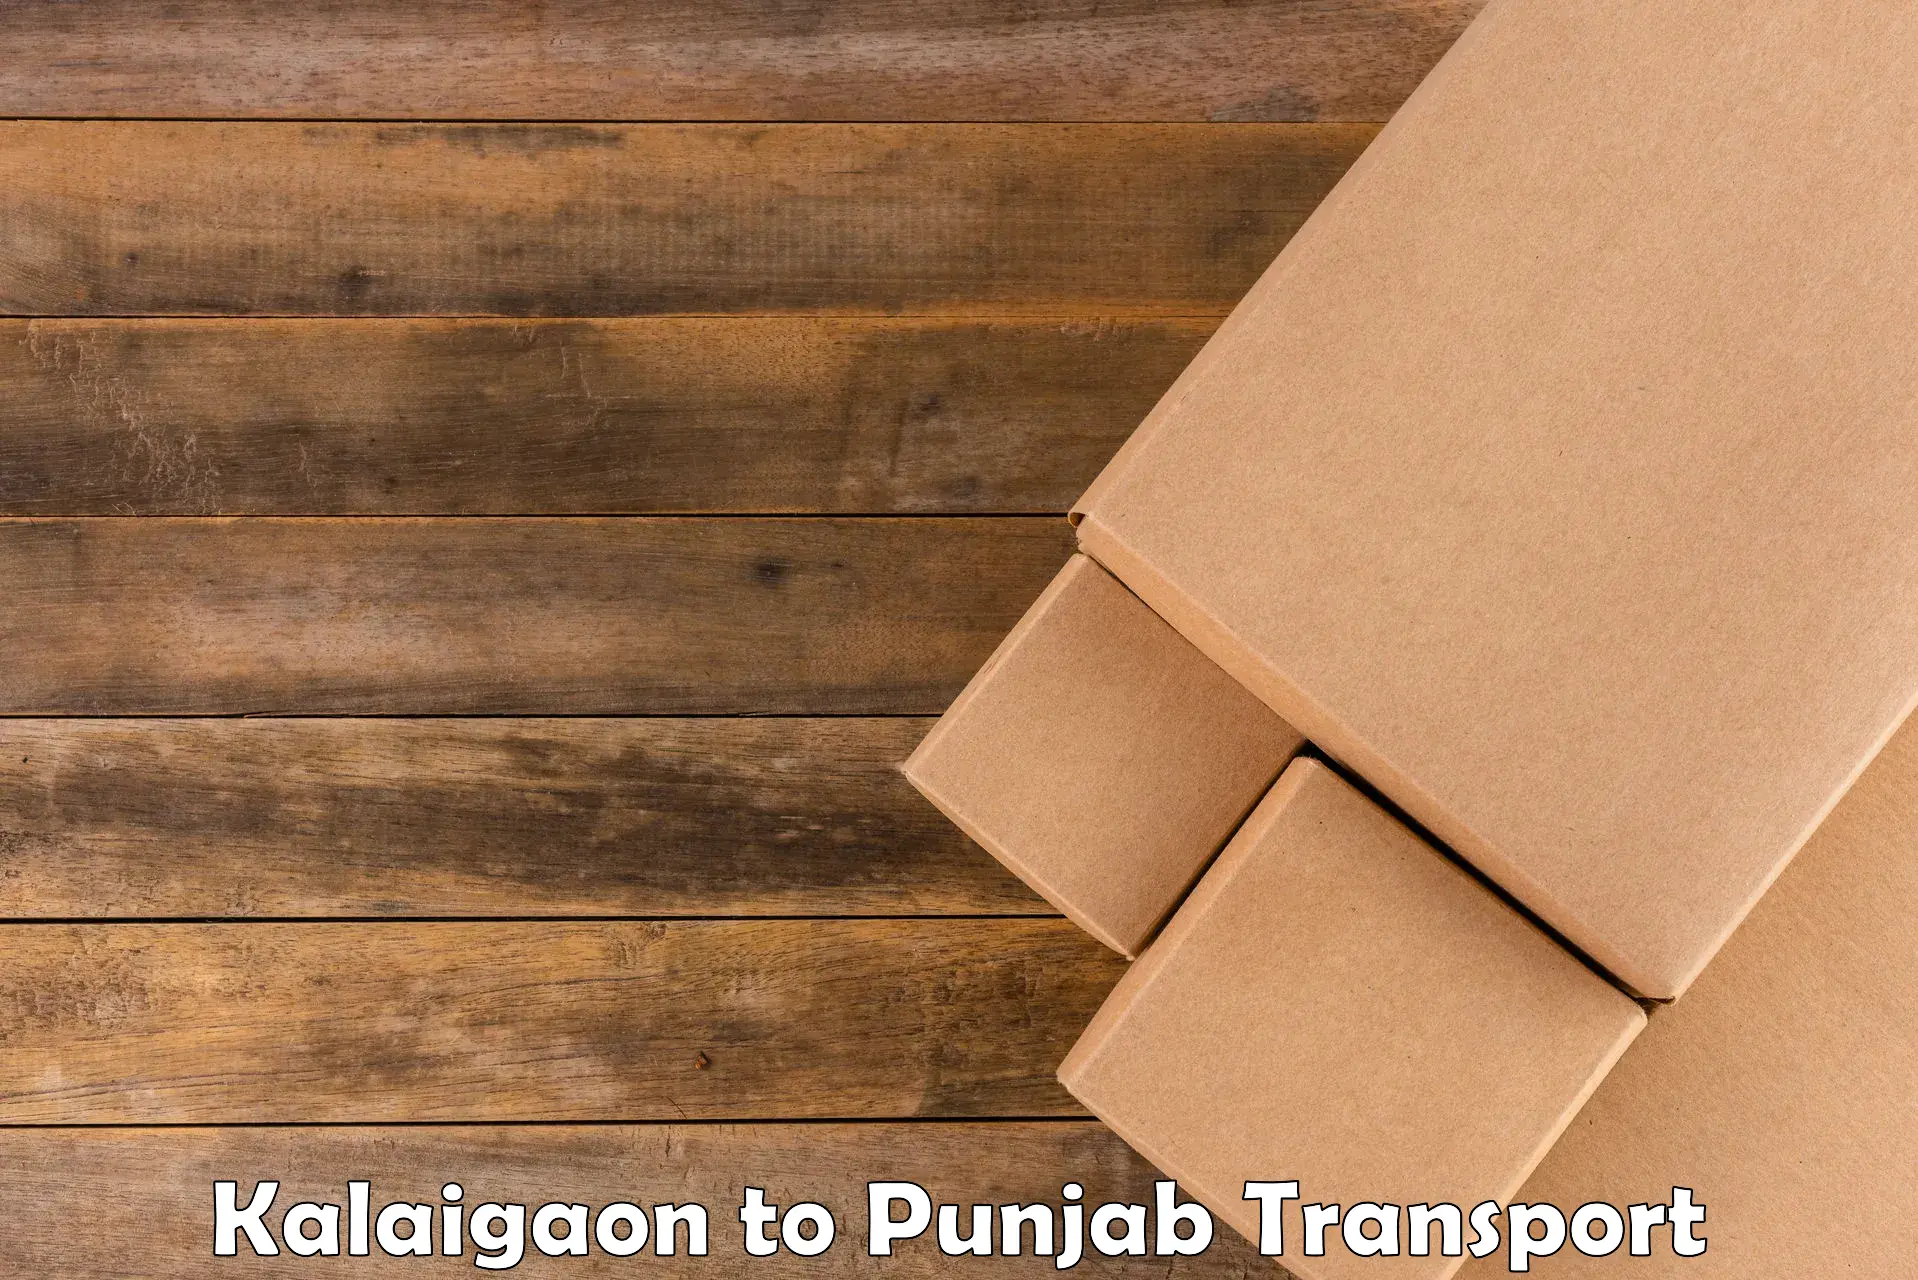 Air cargo transport services Kalaigaon to Sangrur